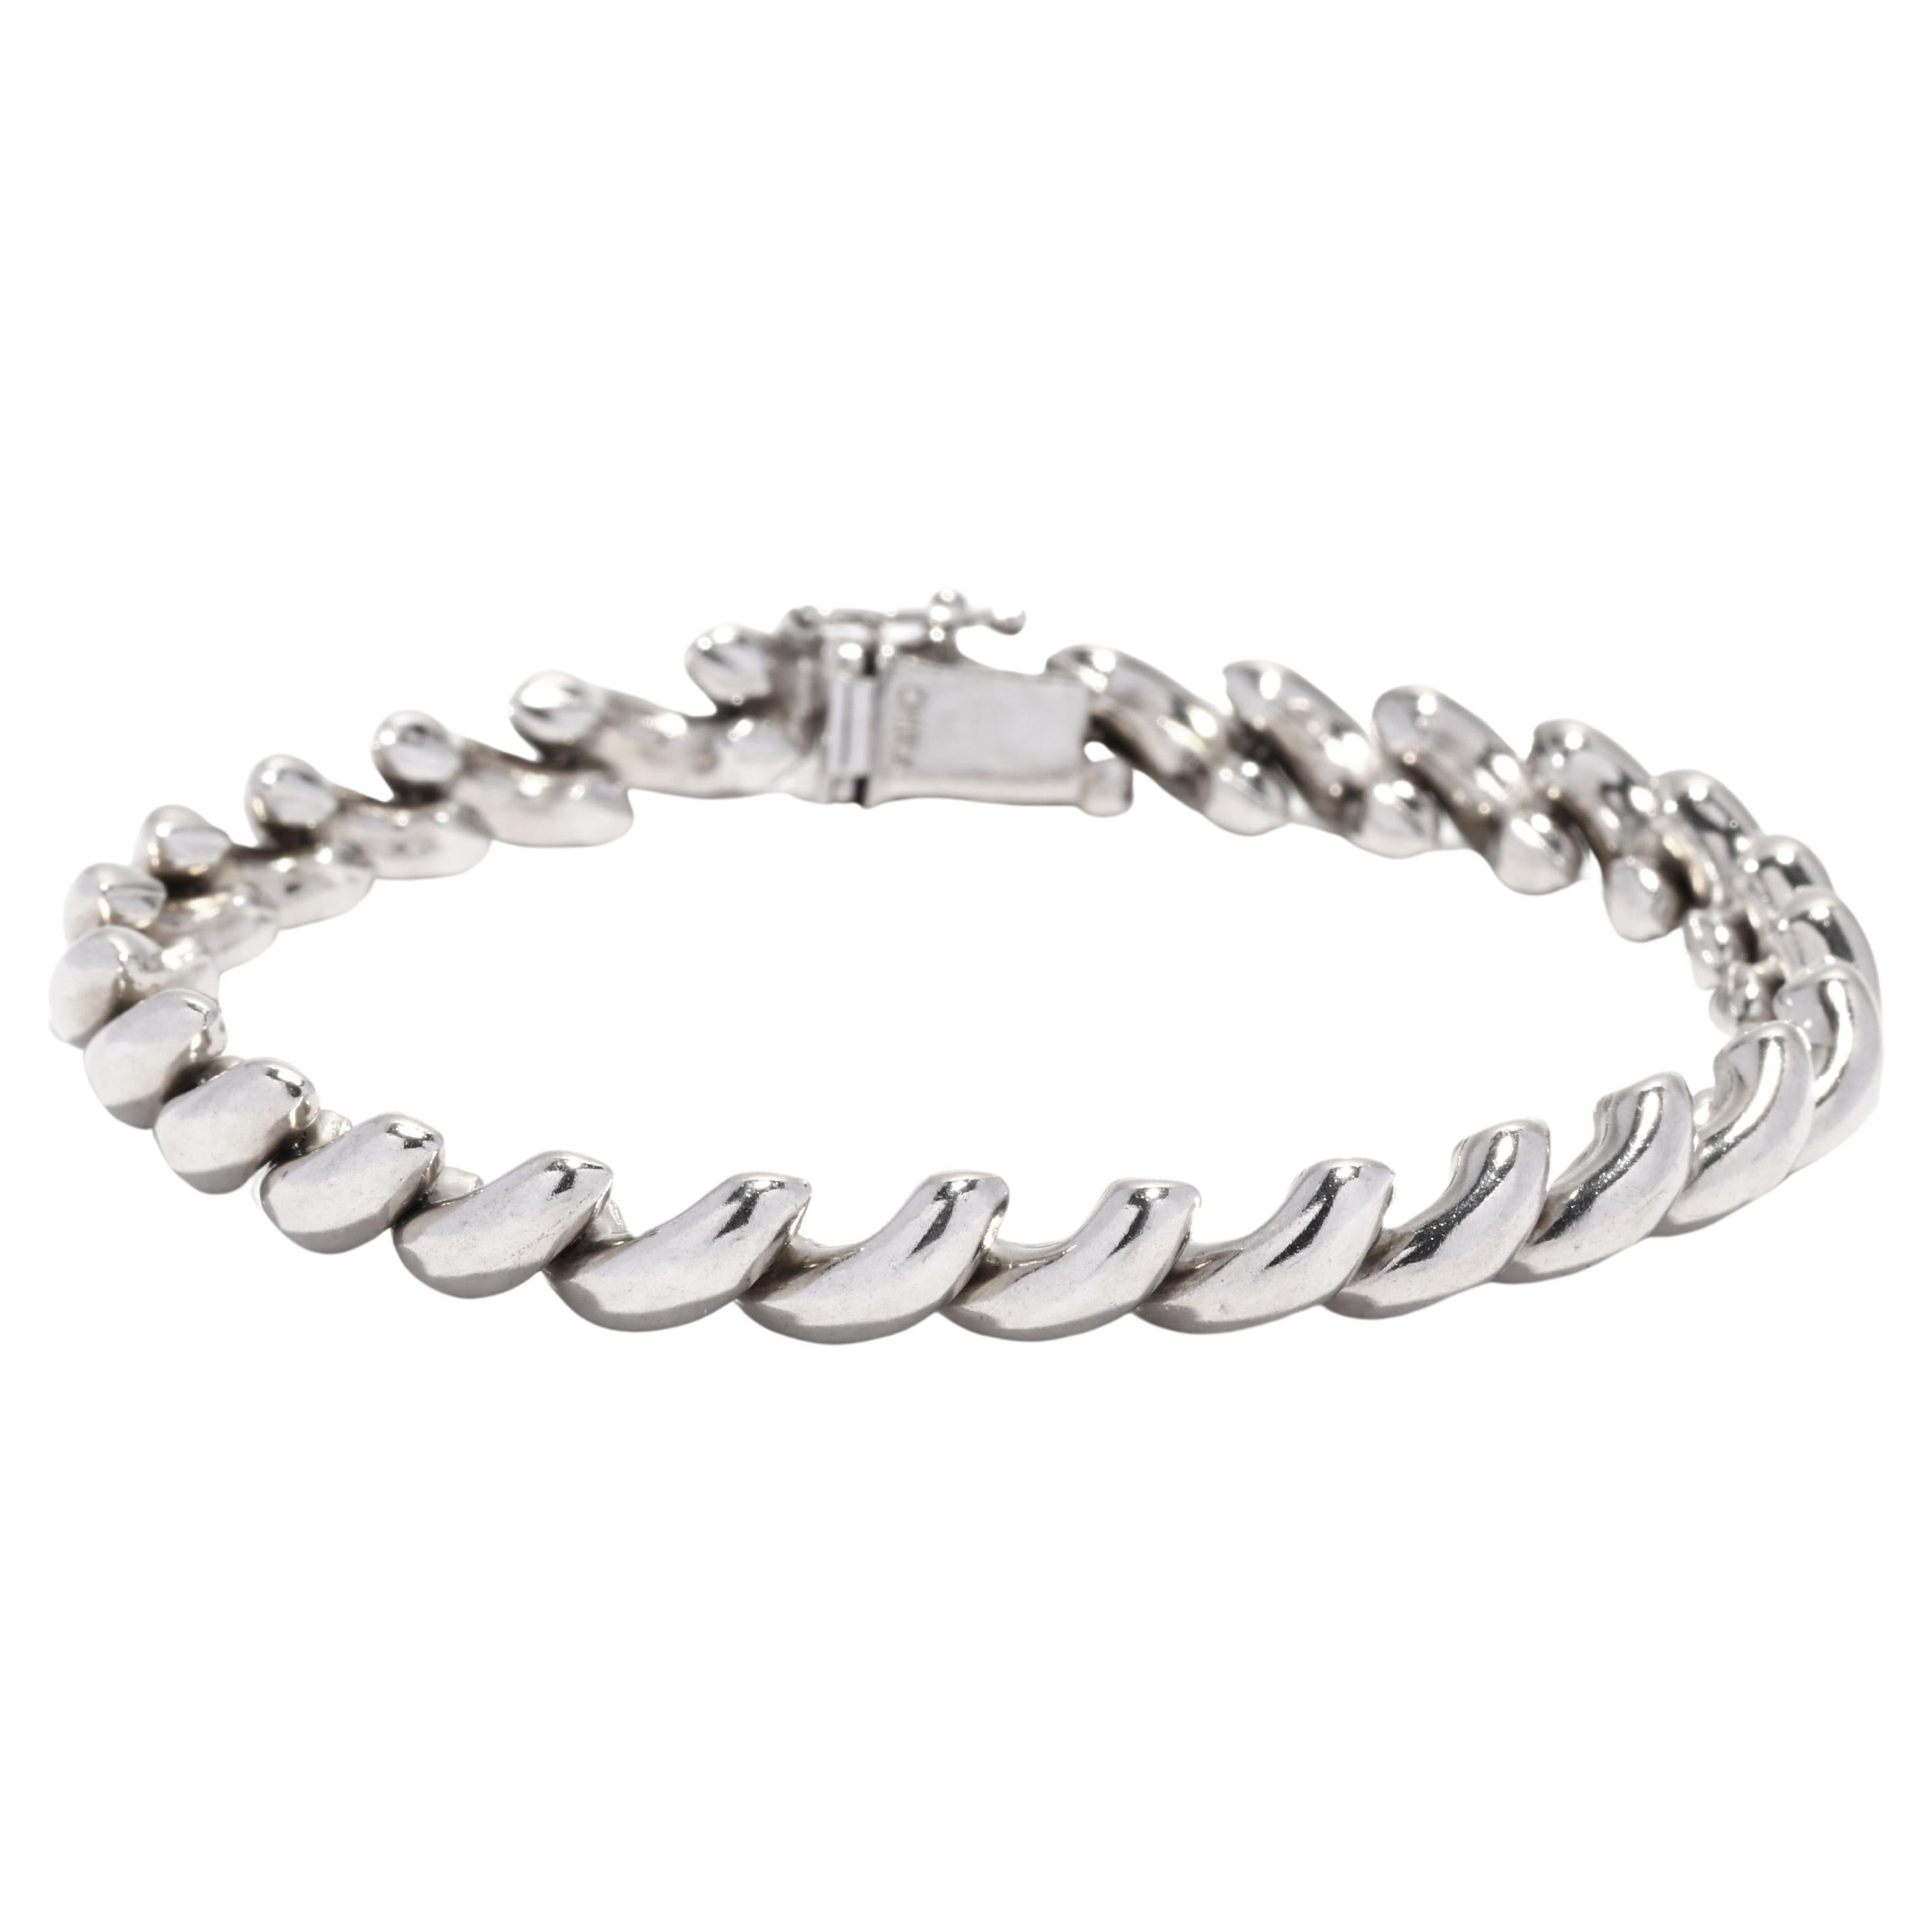 San MarCo Link Bracelet, Sterling Silver, Chain Link Bracelet